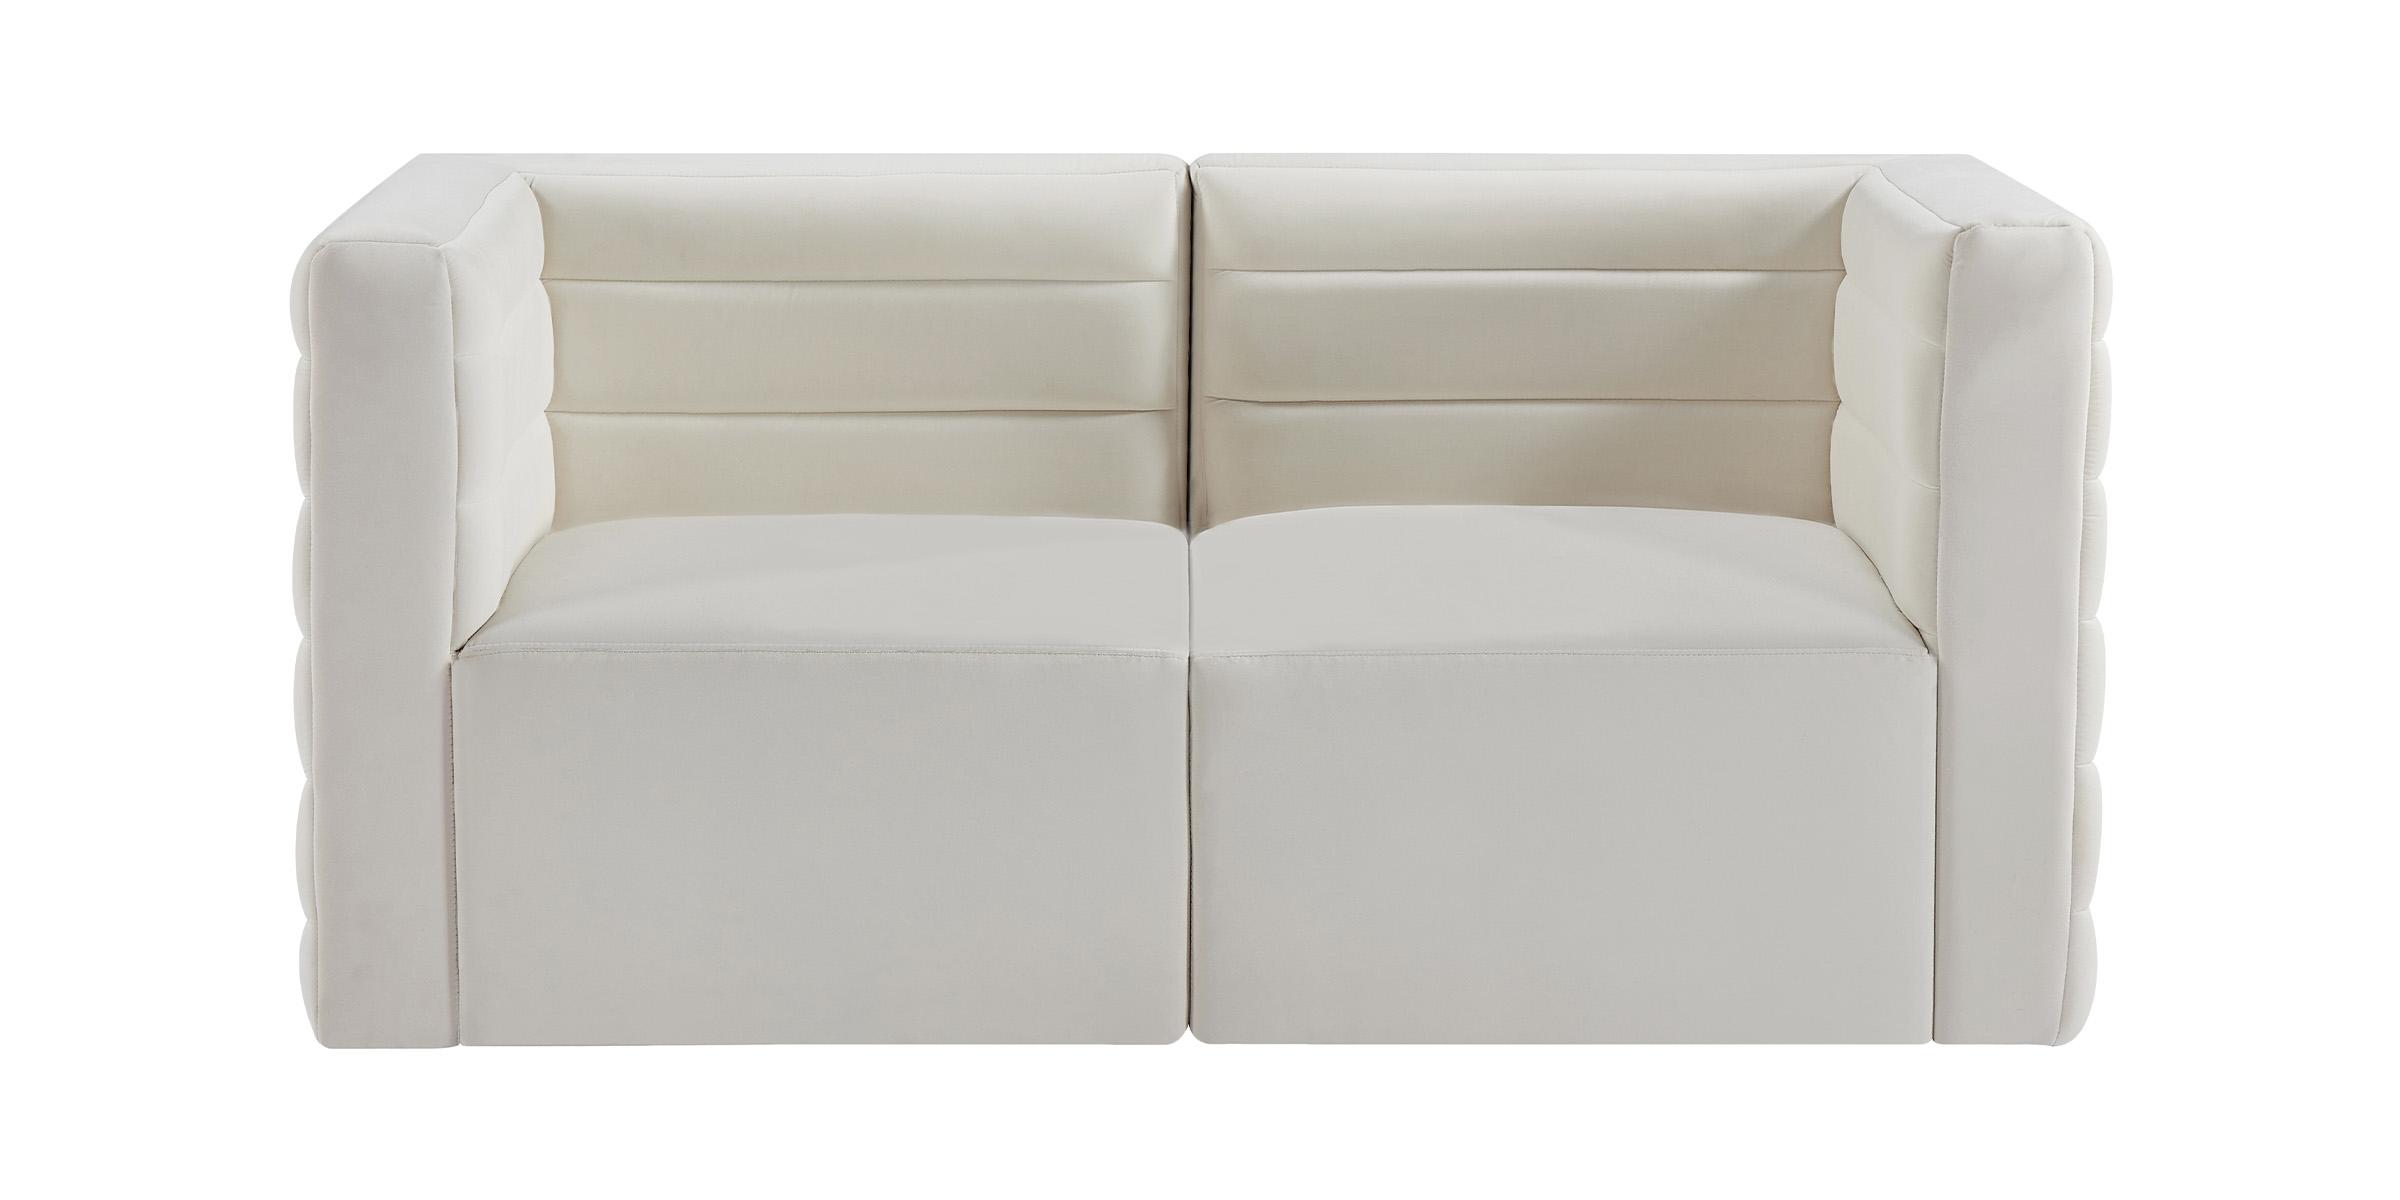 

    
Meridian Furniture Quincy 677Cream-S63 Modular Sofa Cream 677Cream-S63
